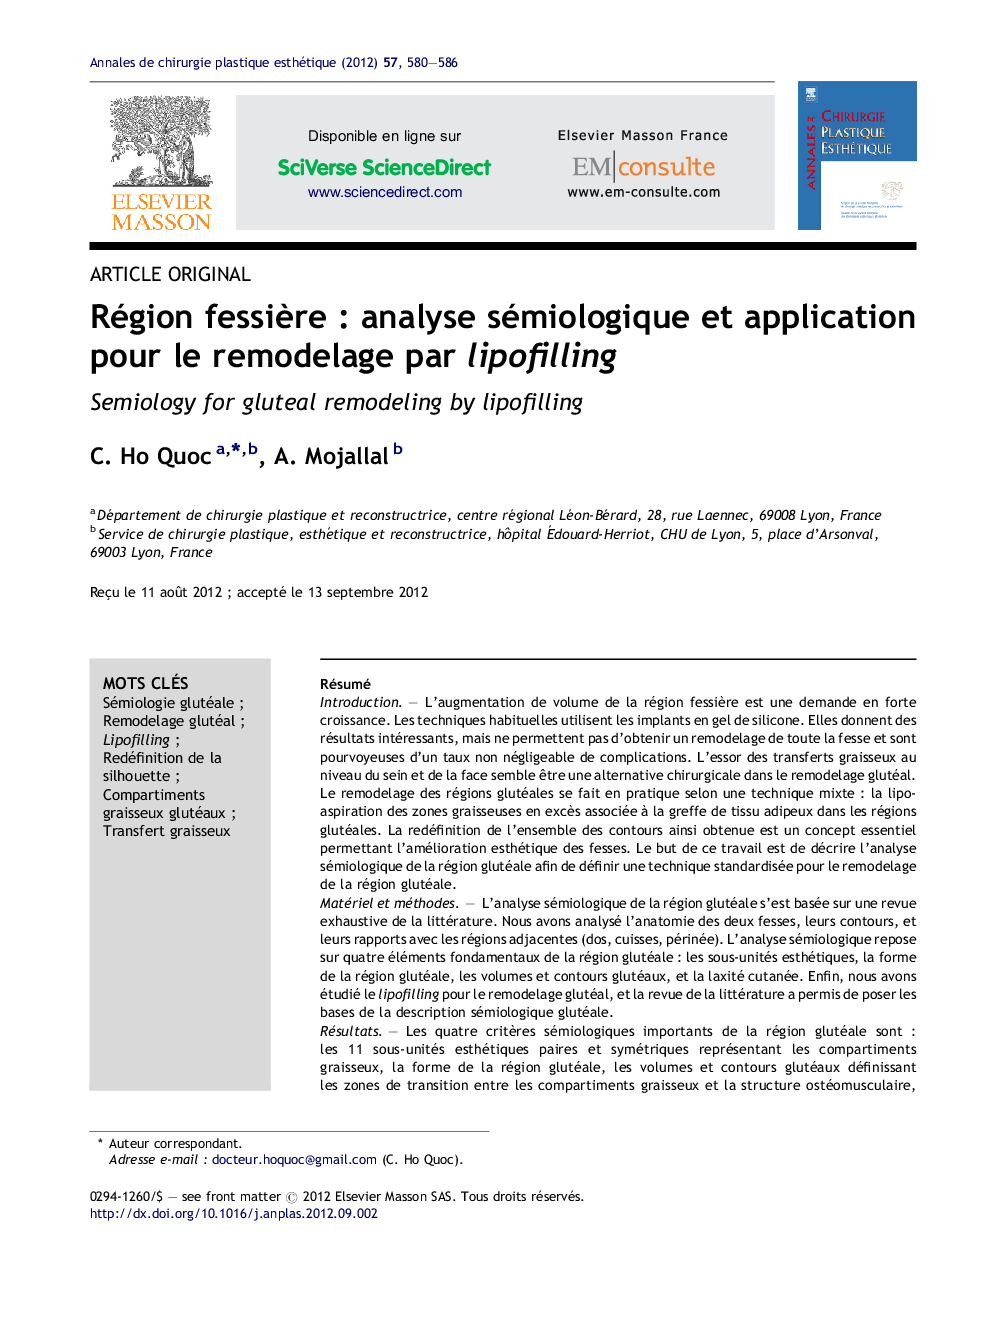 Région fessière : analyse sémiologique et application pour le remodelage par lipofilling